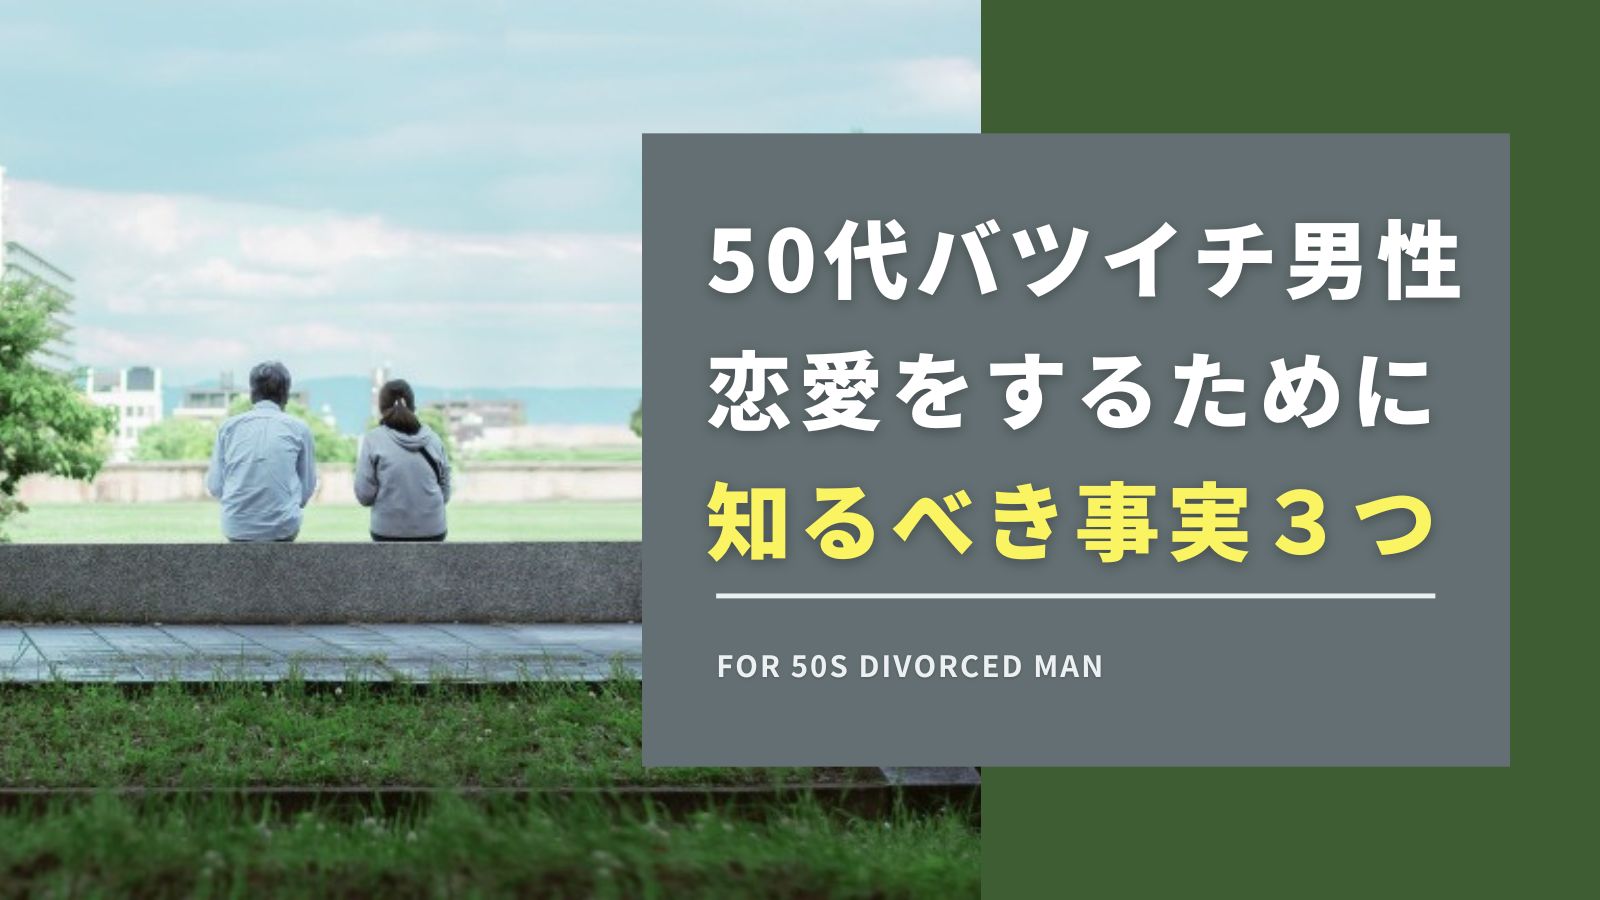 【重要】50代バツイチ男性が恋愛をするために知るべき3つの事実